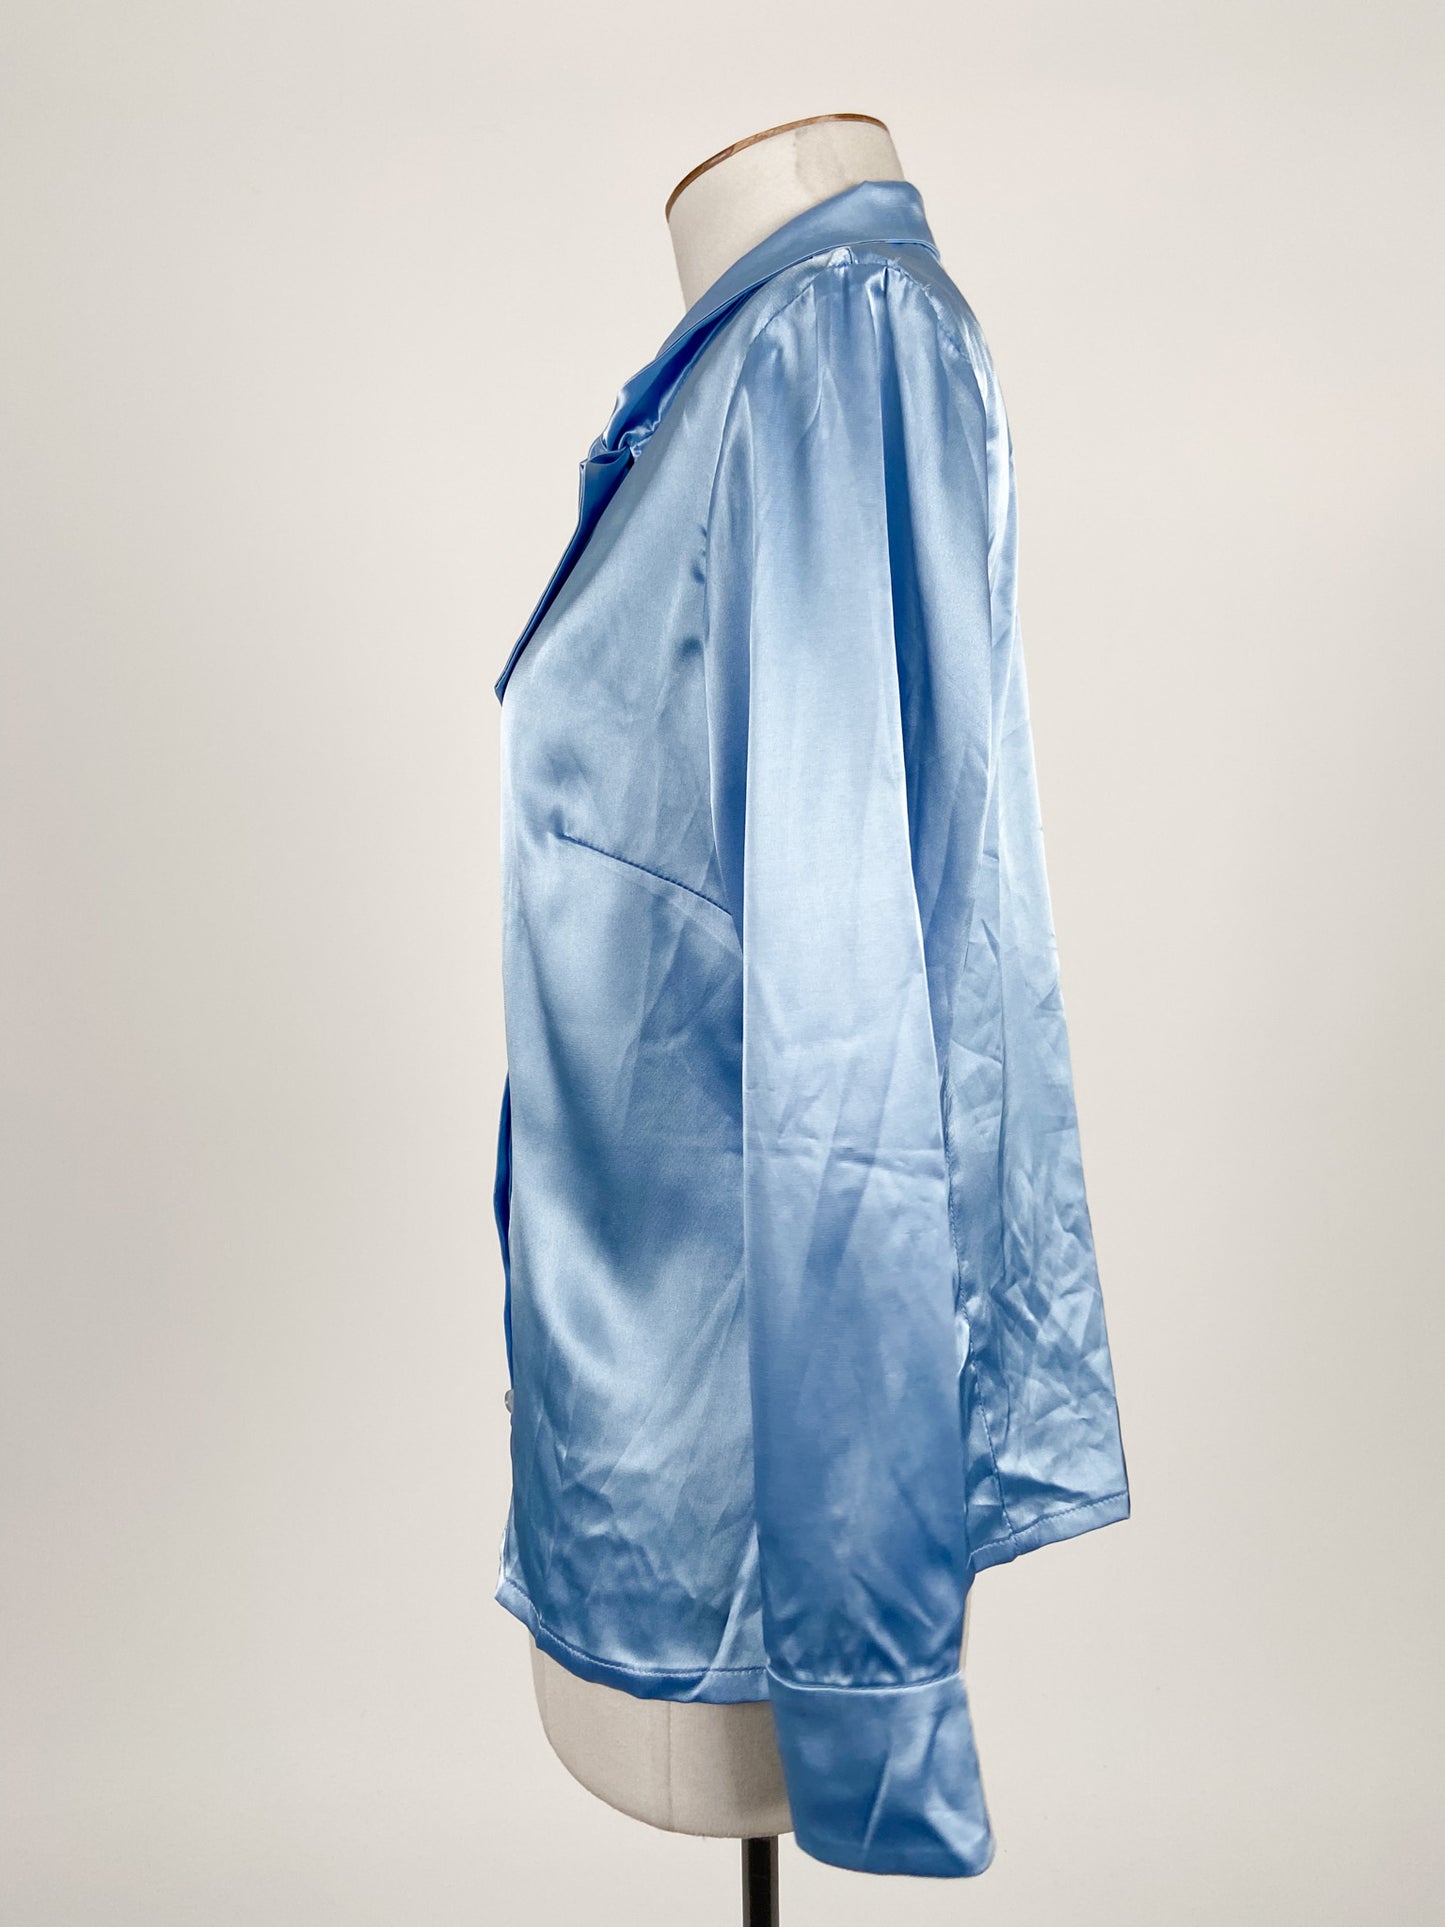 Adrienne Winkelmann | Blue Workwear Top | Size S